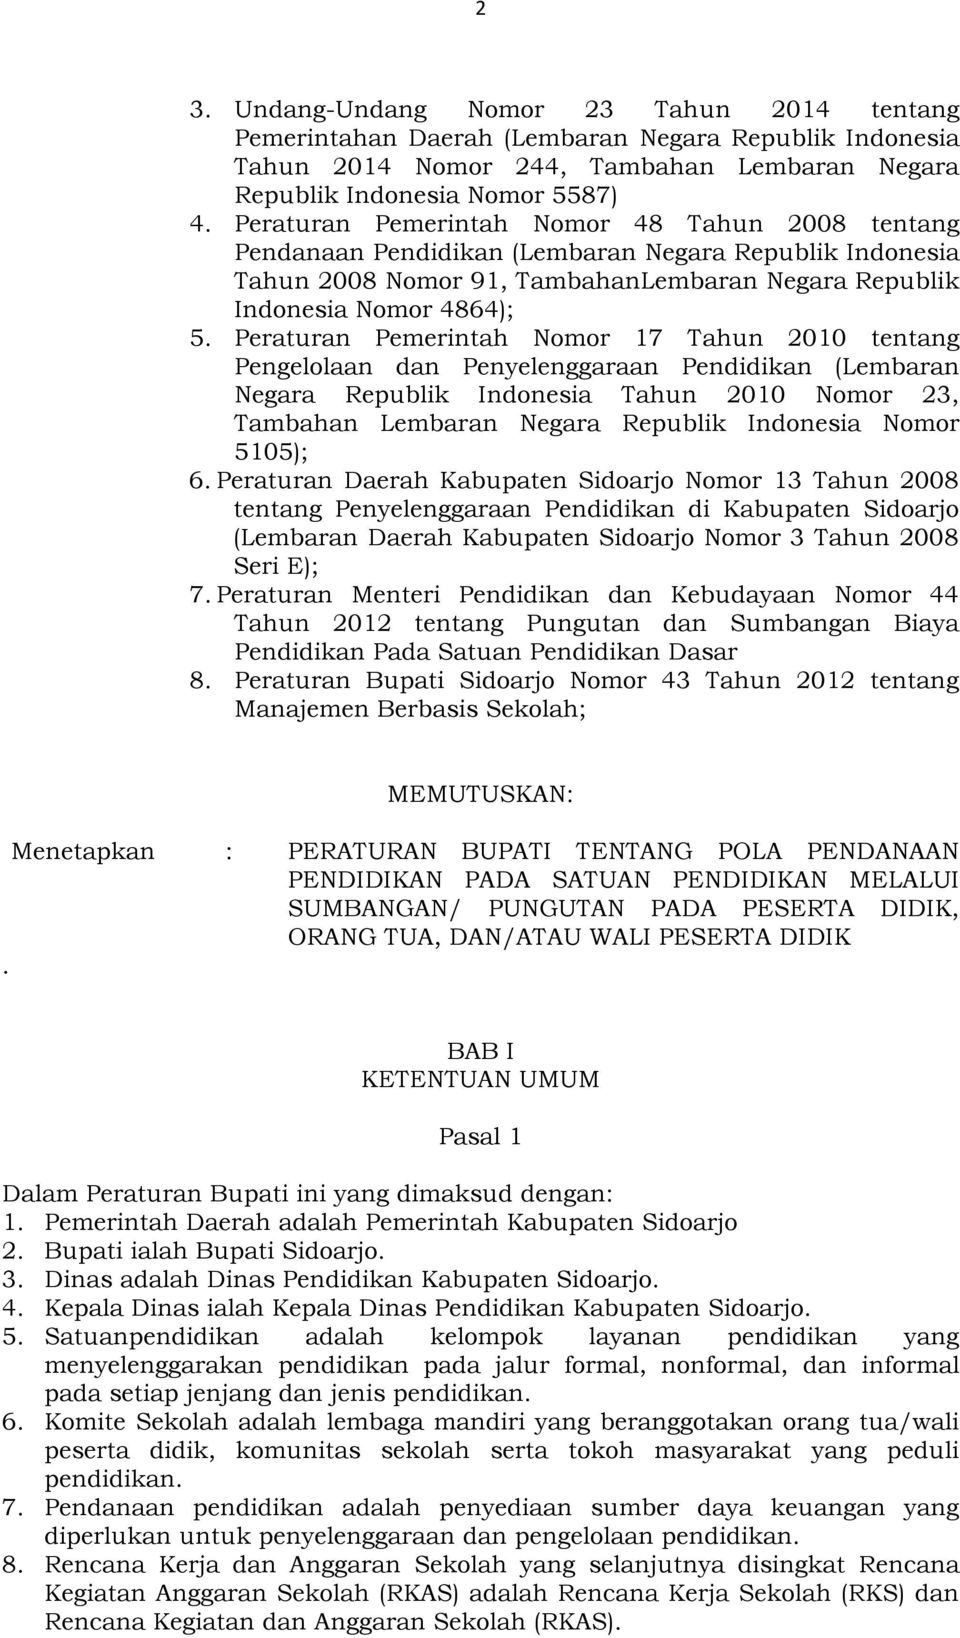 Peraturan Pemerintah Nomor 17 Tahun 2010 tentang Pengelolaan dan Penyelenggaraan Pendidikan (Lembaran Negara Republik Indonesia Tahun 2010 Nomor 23, Tambahan Lembaran Negara Republik Indonesia Nomor